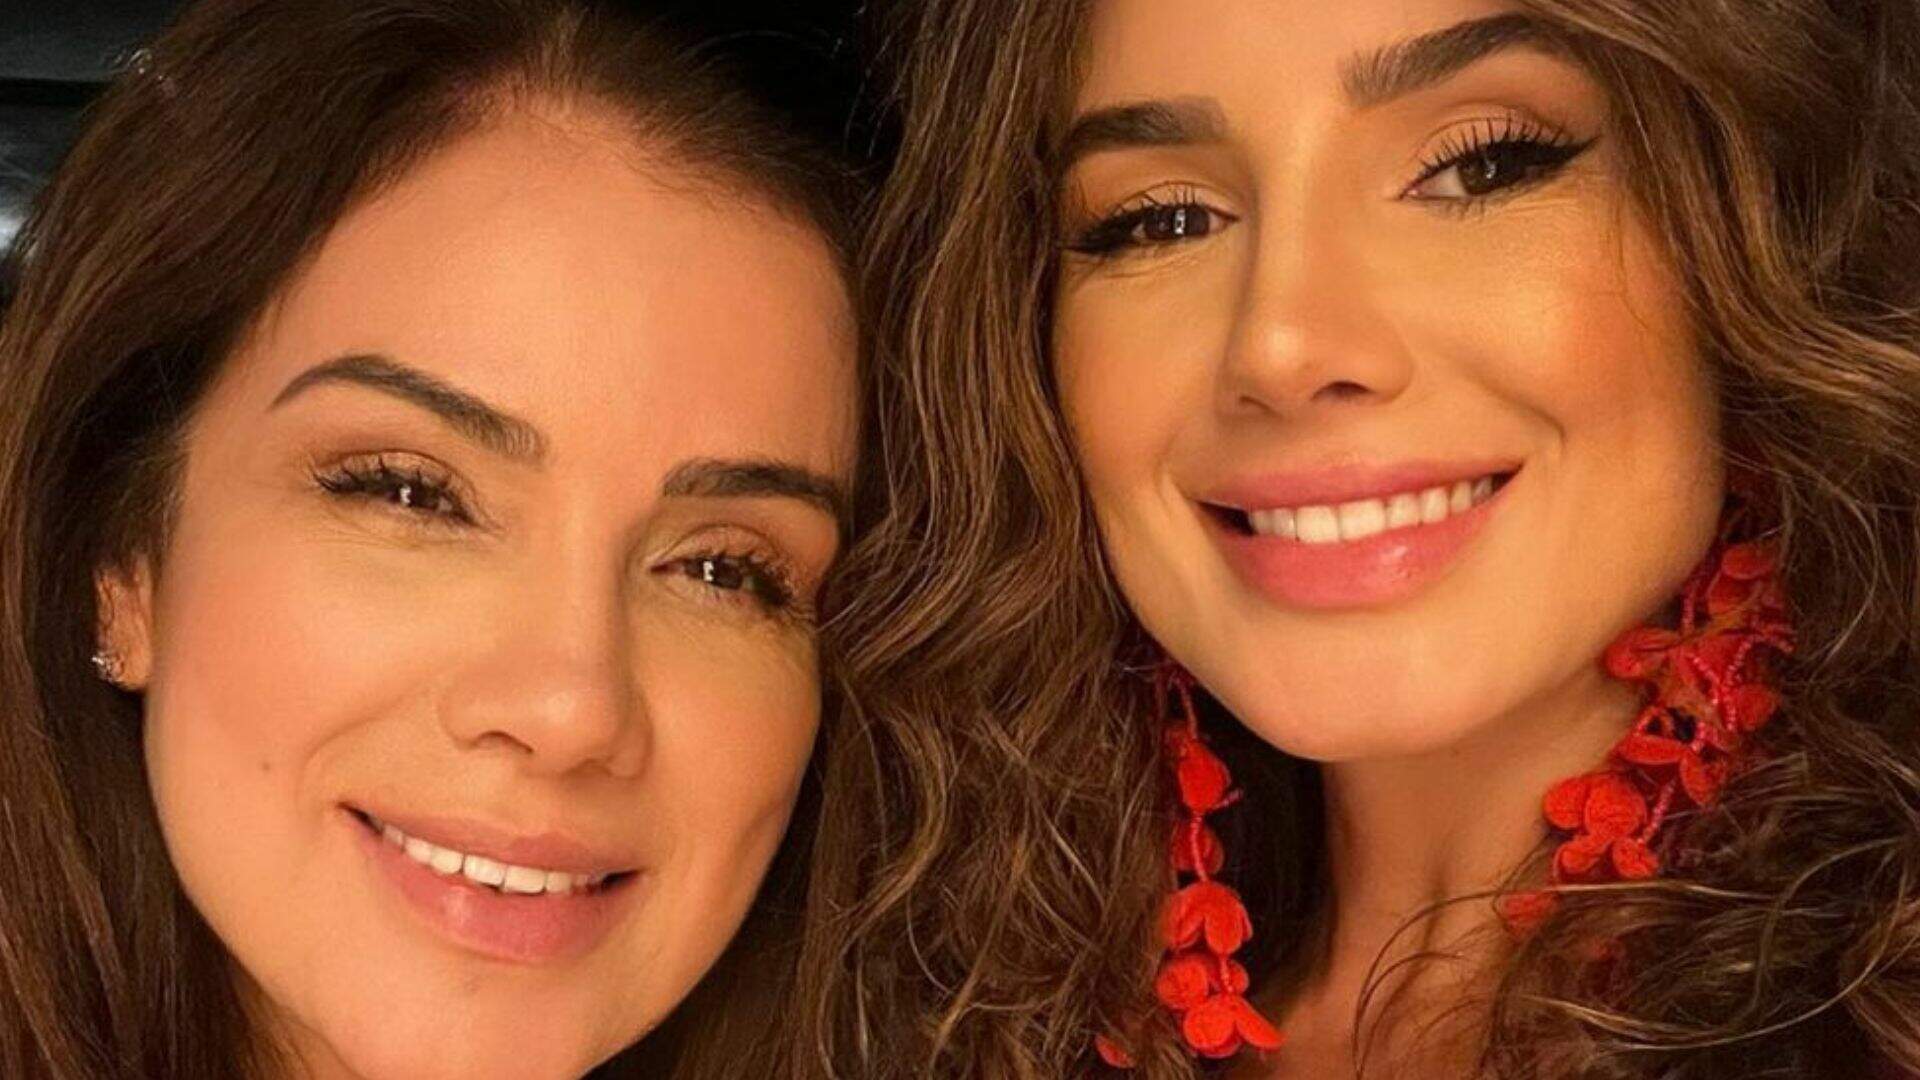 Mãe de Paula Fernandes choca a web com beleza jovial: “Parecem irmãs” - Metropolitana FM